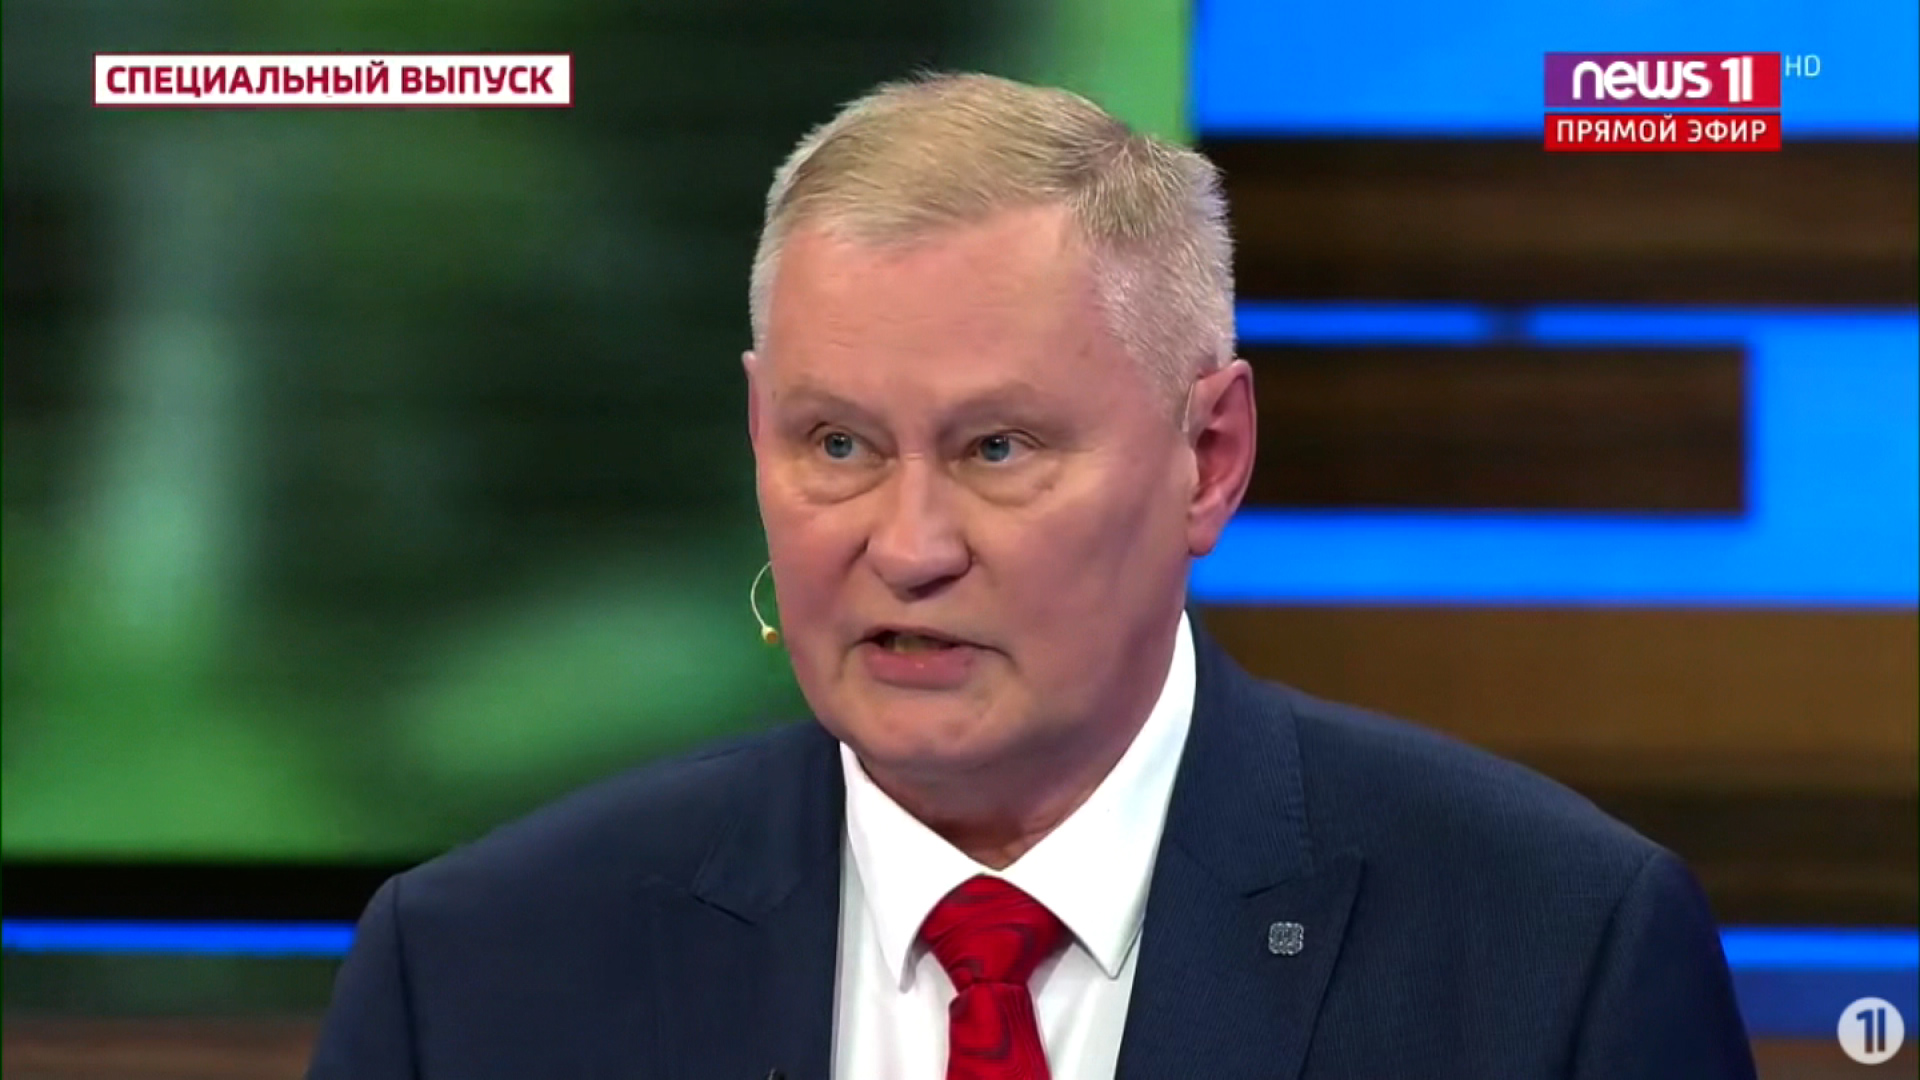 L’ex colonnello russo contraddice i precedenti rapporti che criticavano le operazioni militari russe in Ucraina